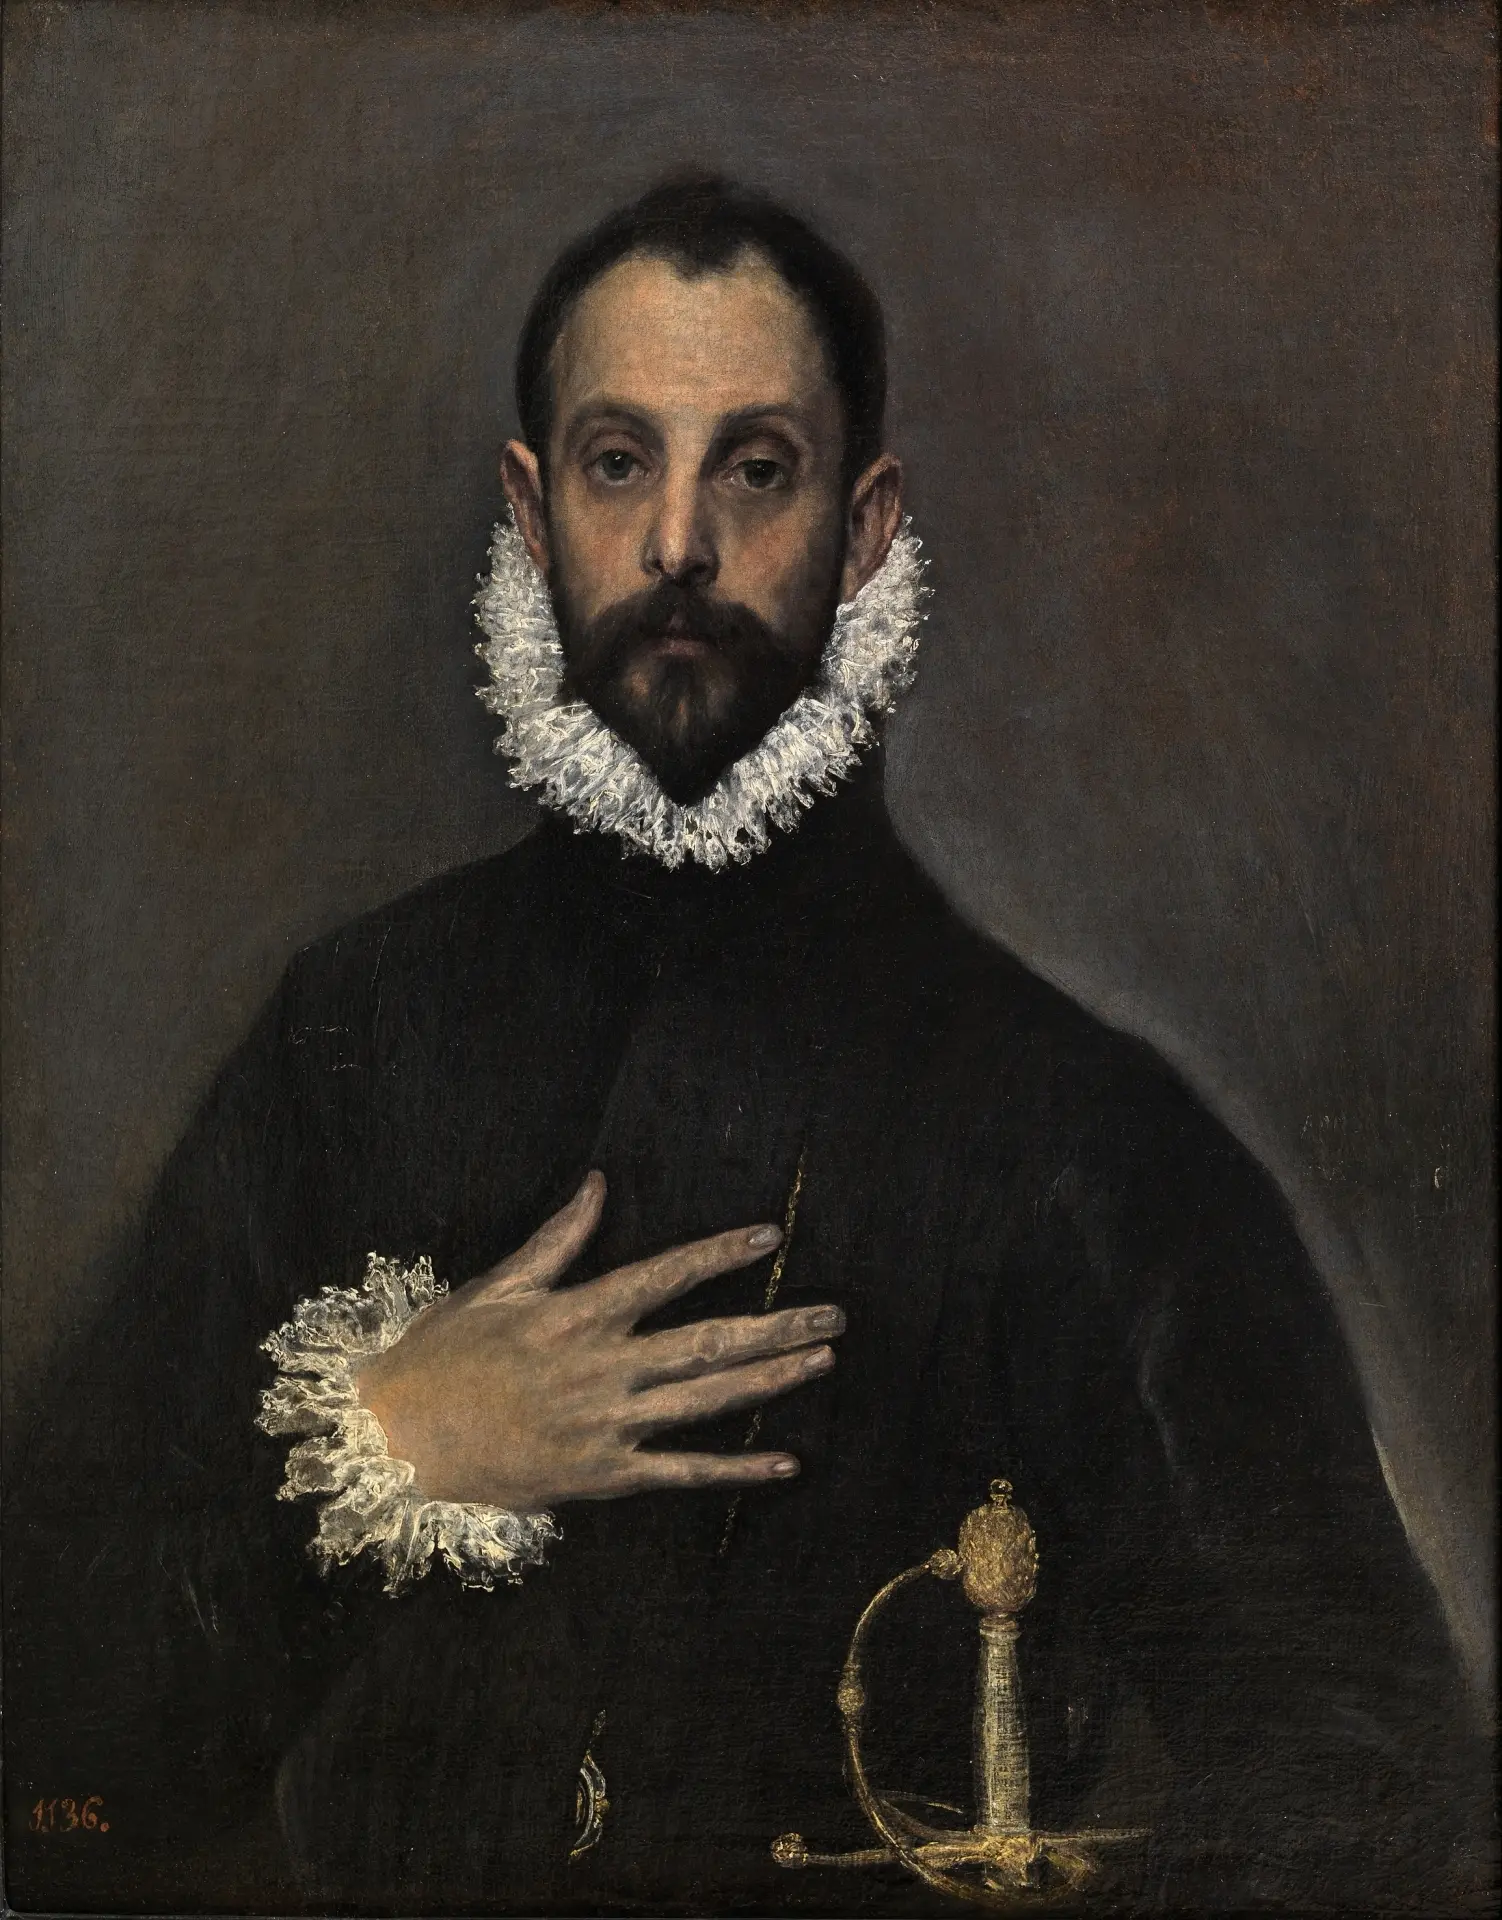 cuadros de el greco en el museo del prado - Dónde están los cuadros de El Greco